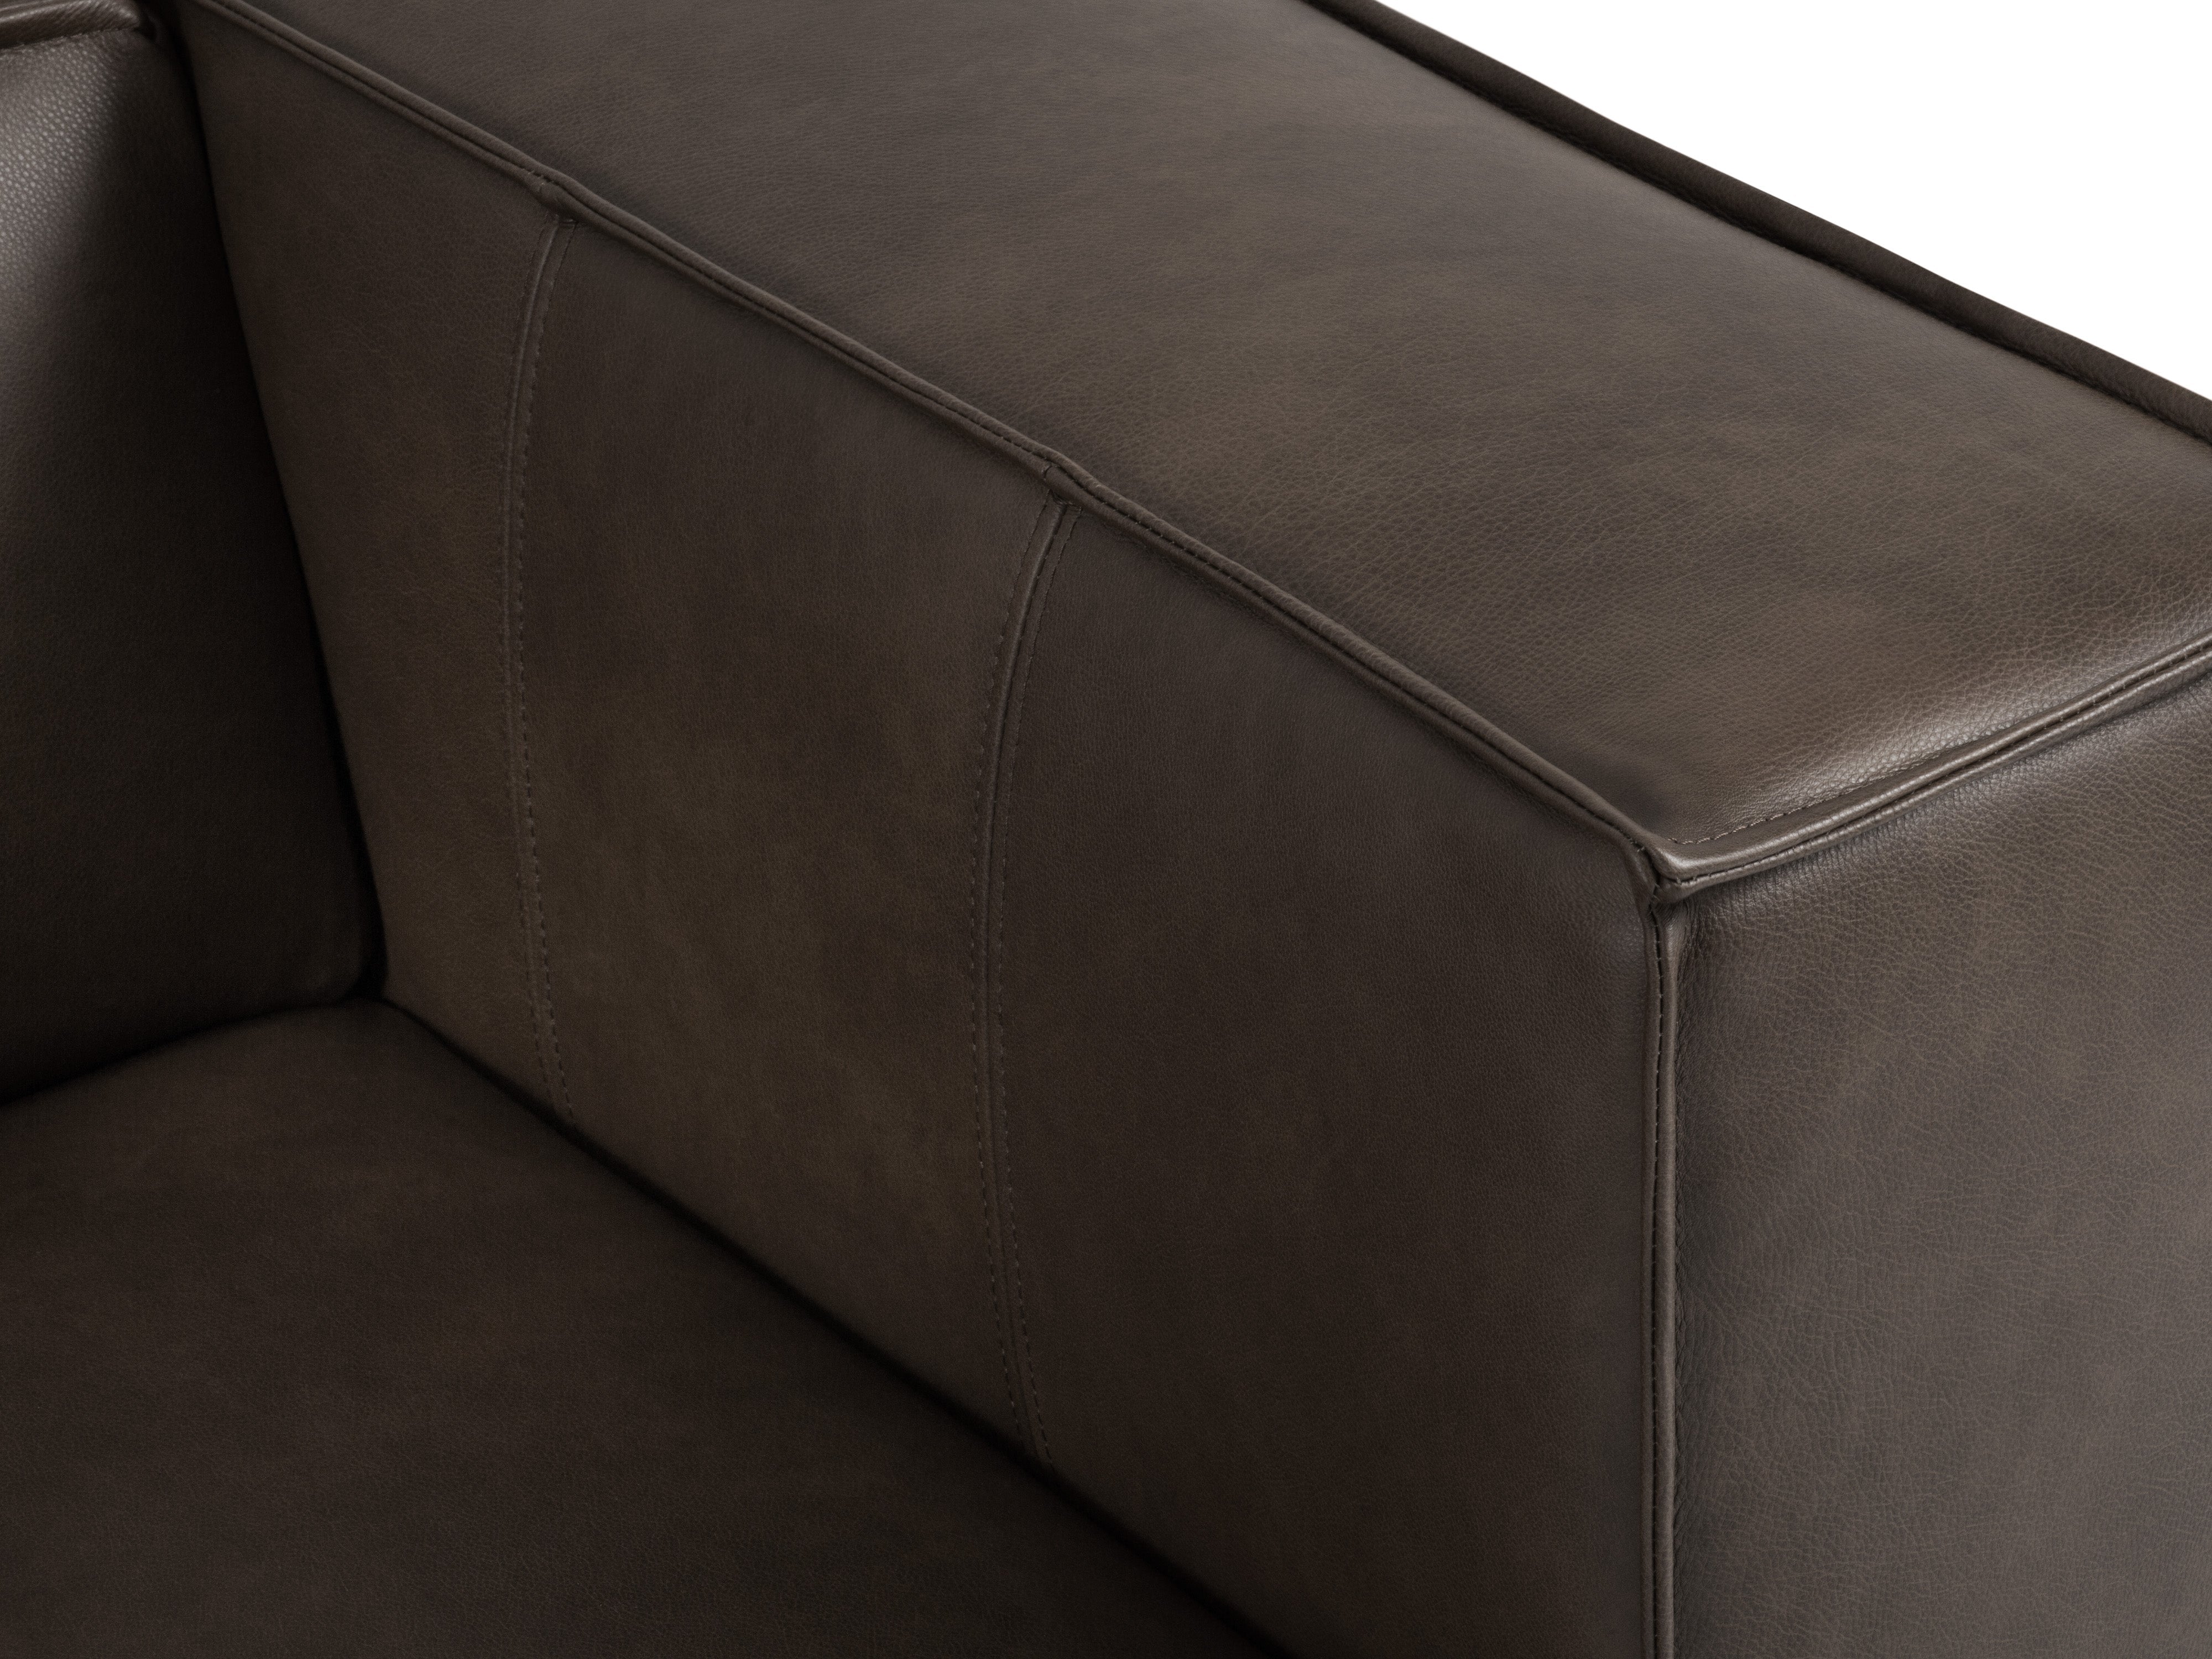 Sofa skórzana 3-osobowa MADAME oliwkowy brąz, Windsor & Co, Eye on Design